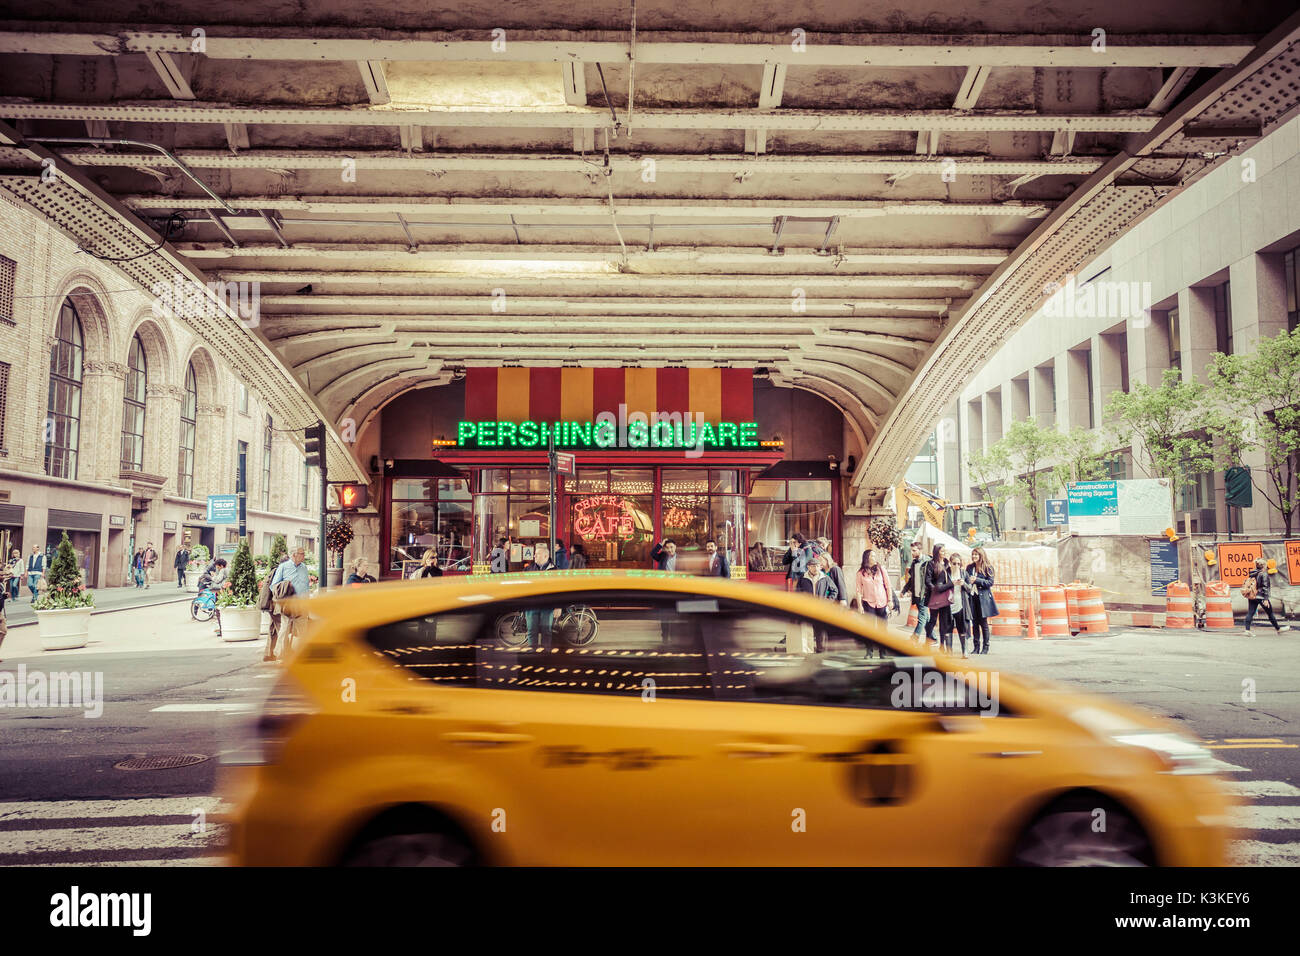 Cafe en el Pershing Square, Grand Central Station y terminal, debajo del puente, la gente ocupada, Manhattan, Nueva York, EE.UU. Foto de stock